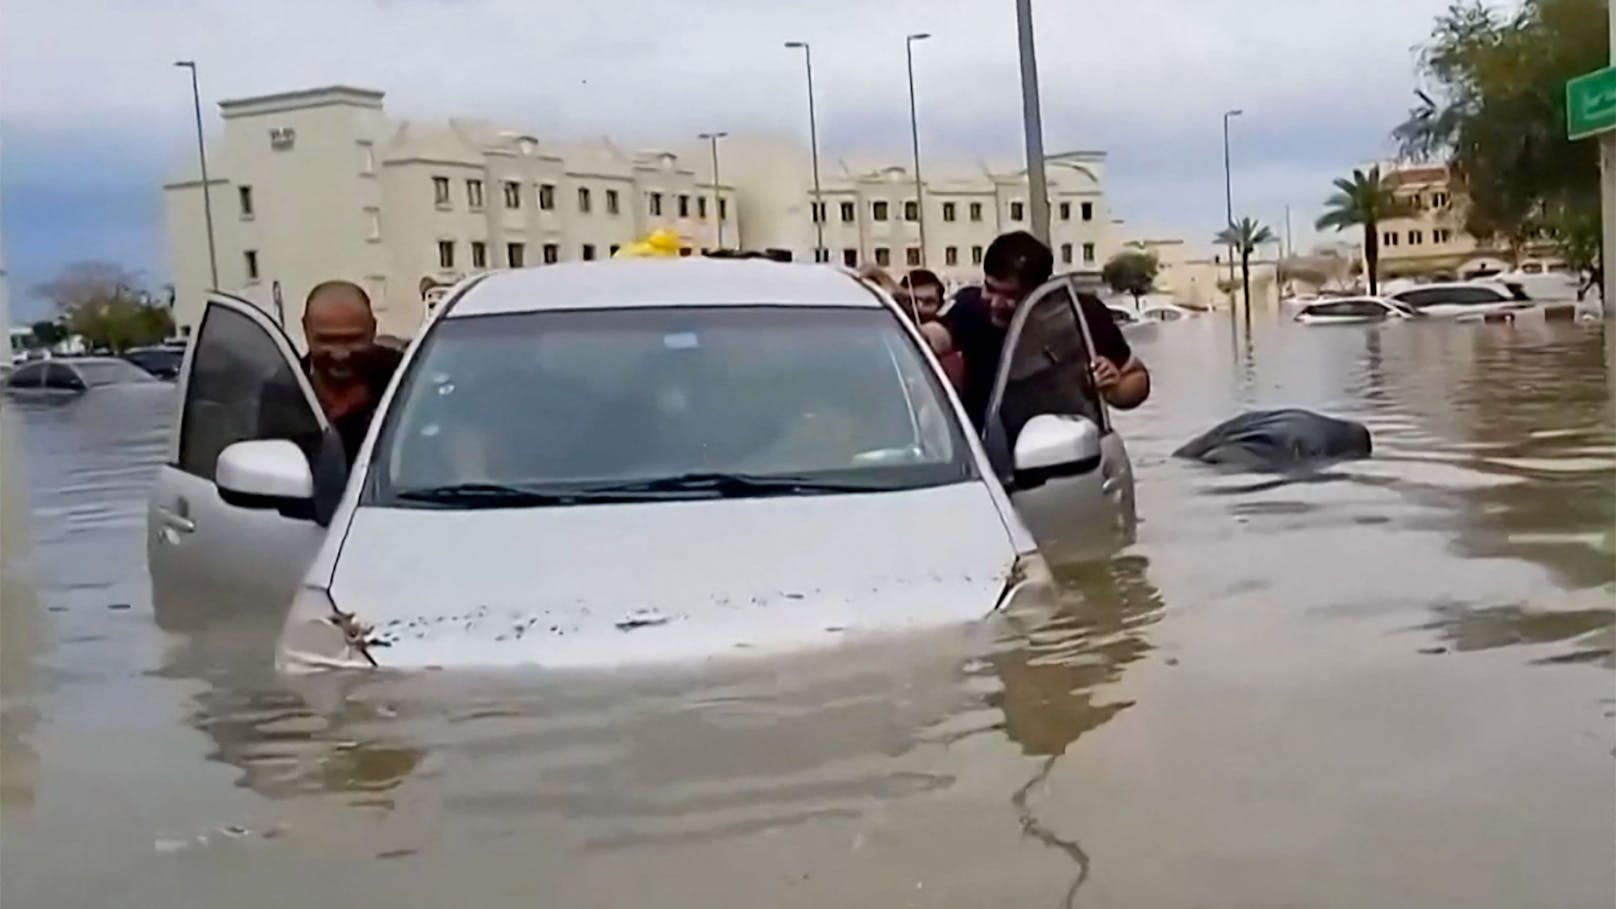 "Regenbombe" flutet Dubai: "So sieht die Sintflut aus"